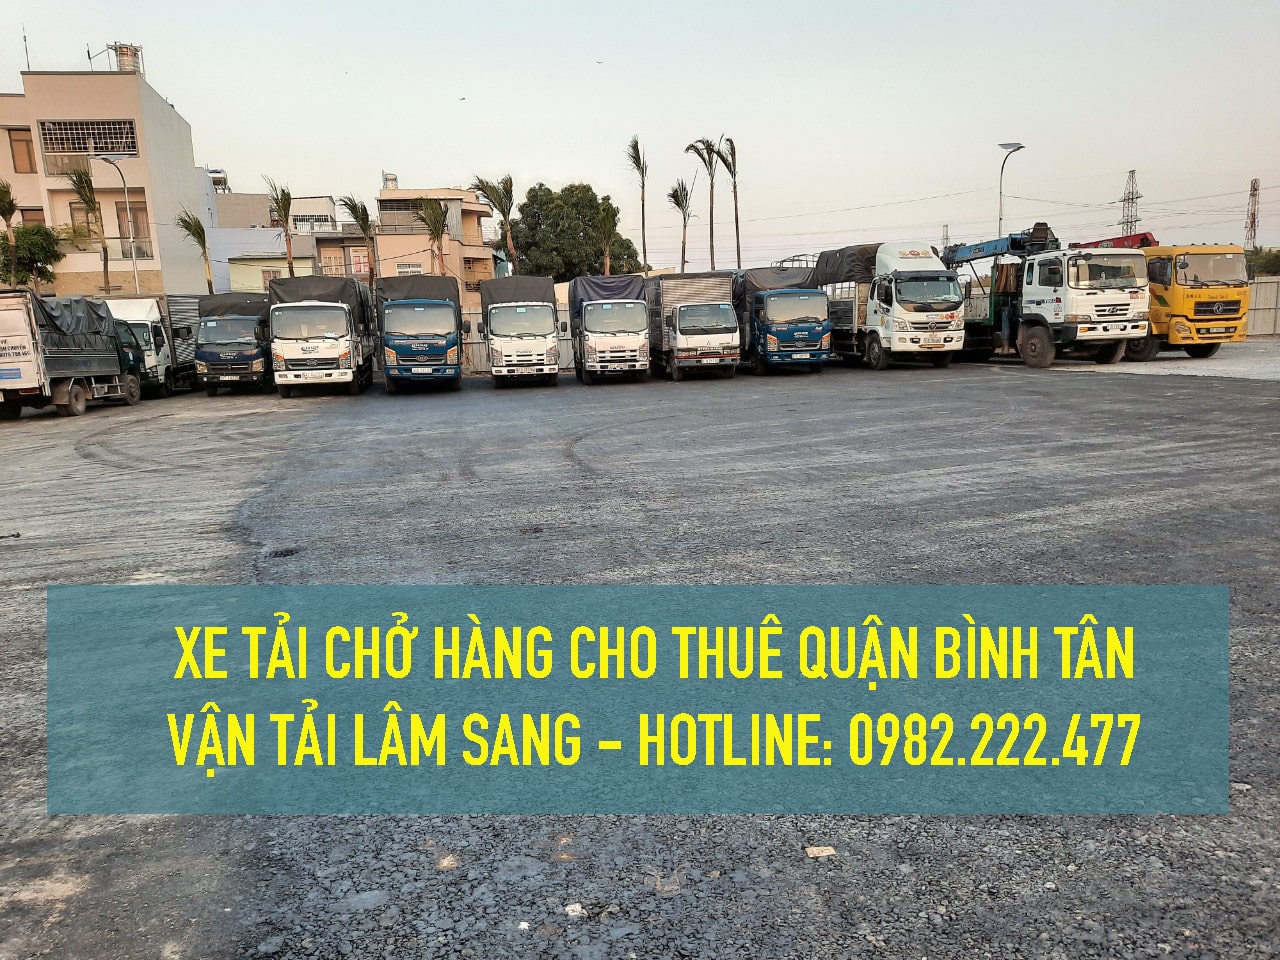 Dịch vụ cho thuê xe tải chở hàng giá rẻ tại Quận Bình Tân